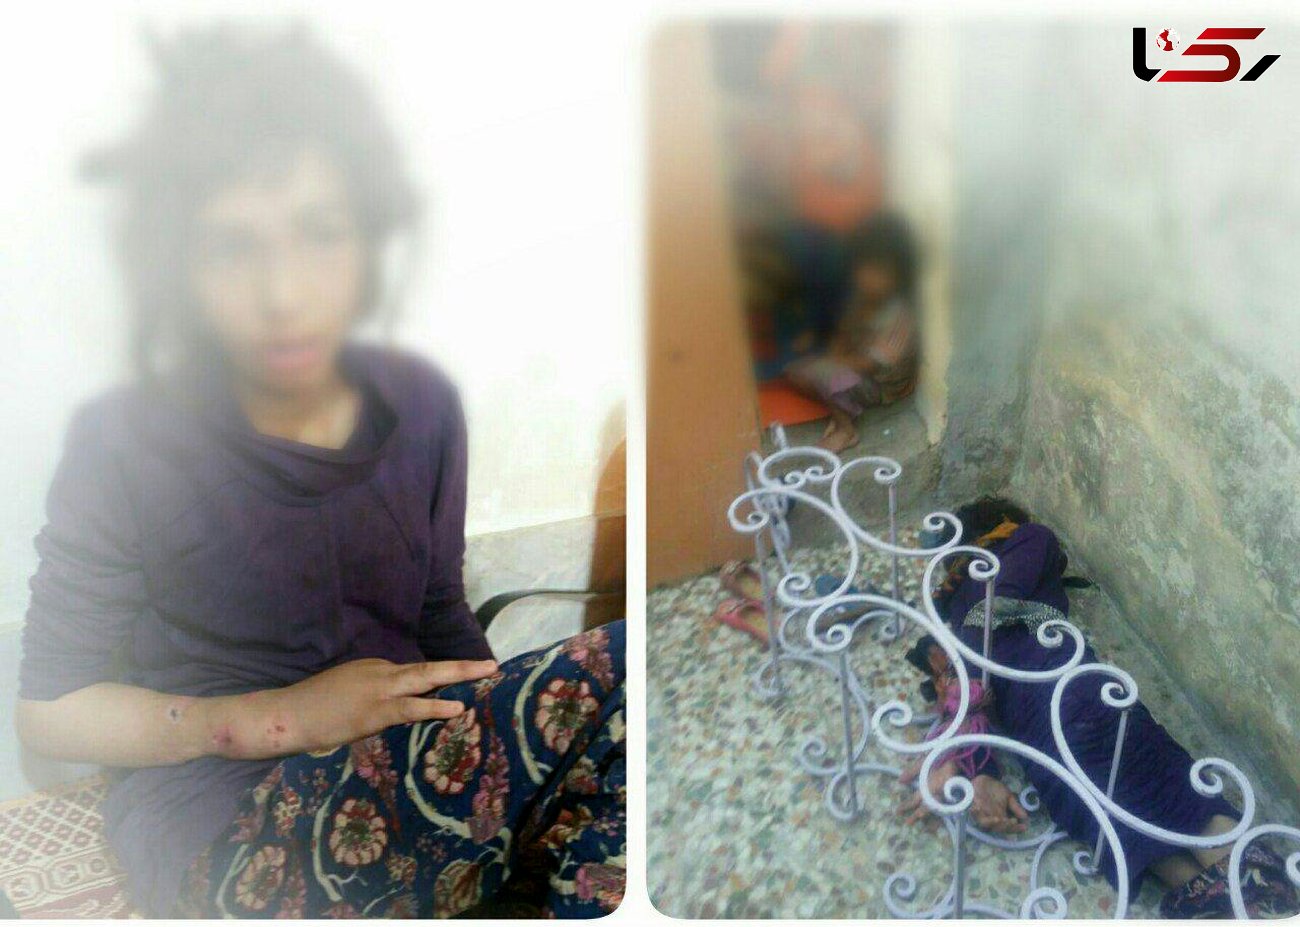  کودکان شکنجه شده  ماهشهری صاحب سرپرست مهربان شدند + عکس